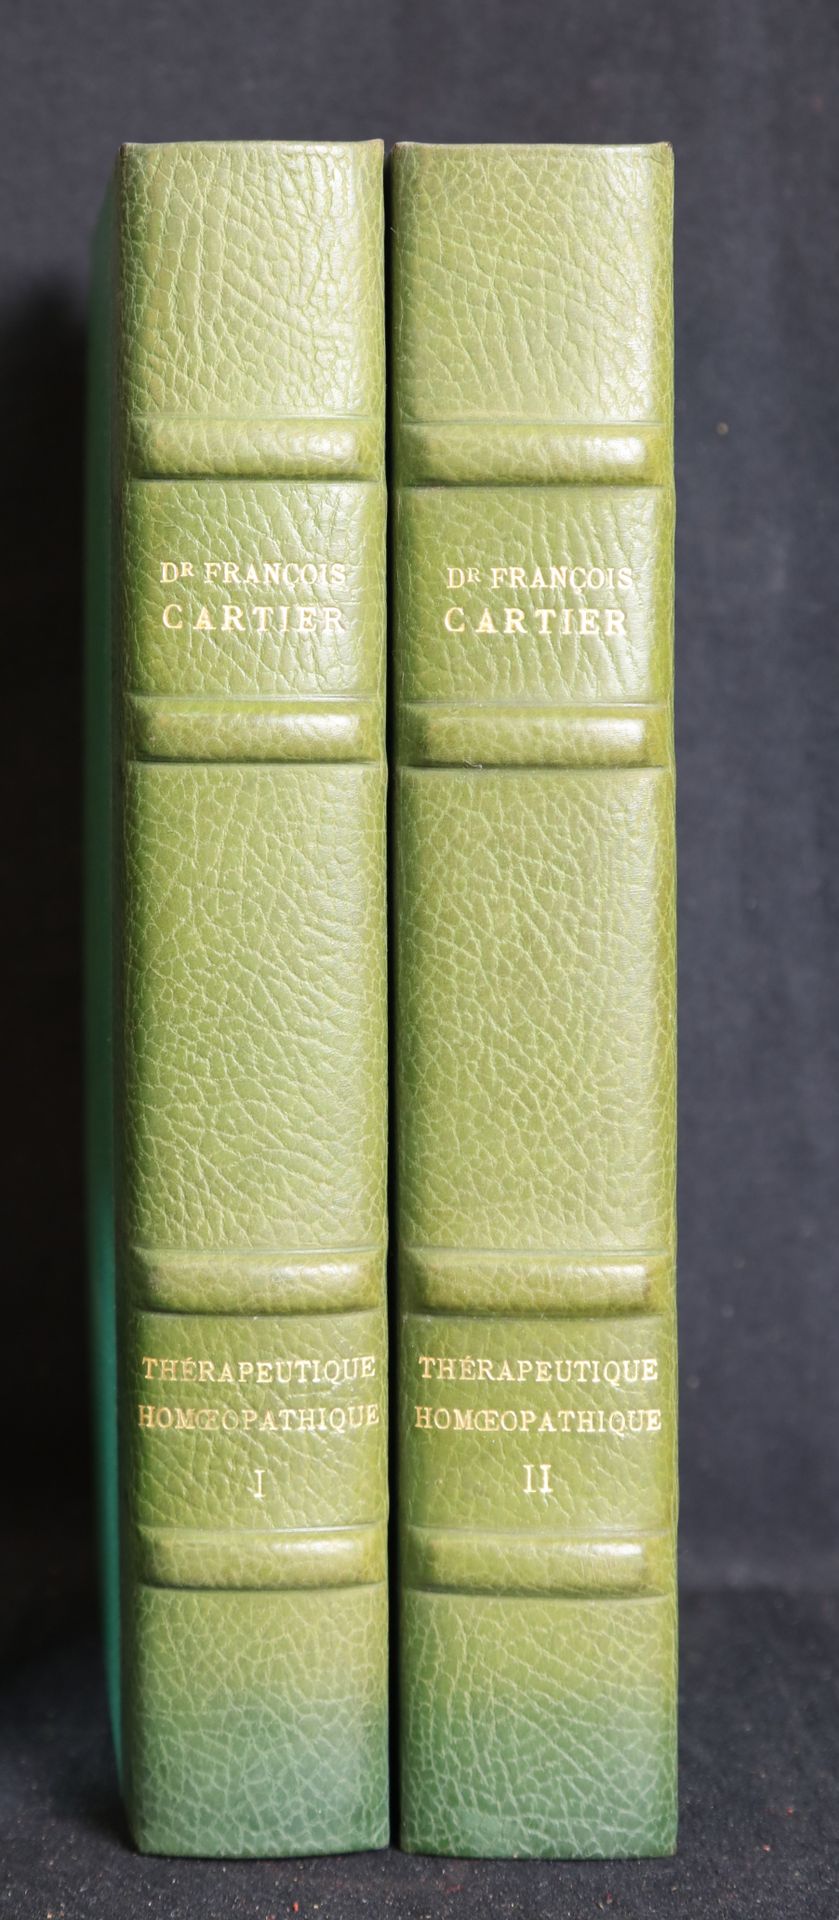 Null CARTIER F. Dc, Terapeutica omeopatica I e II (volumi)